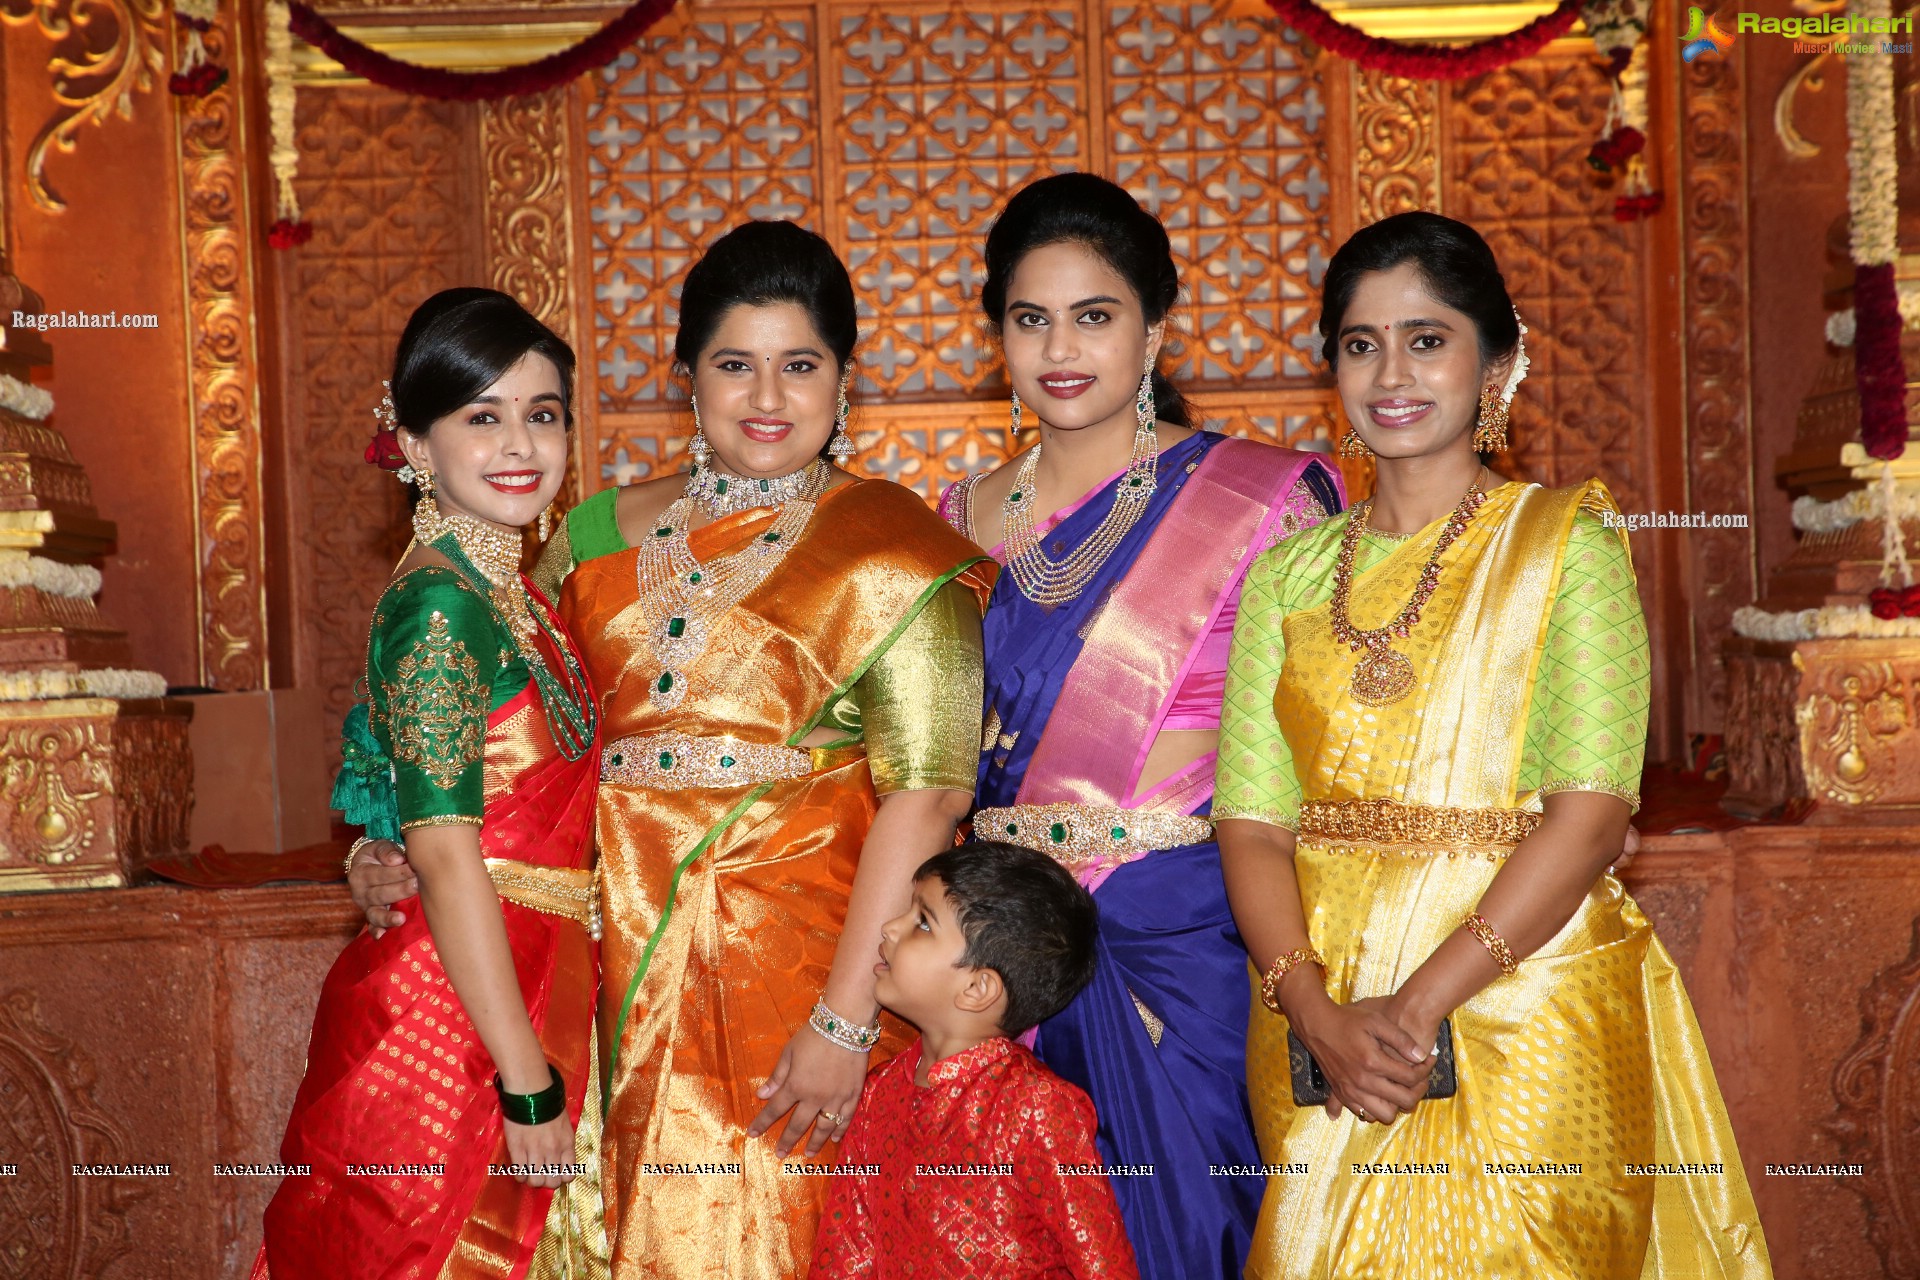 Producer Lakshman's son Ujwal and Manisha's Wedding – A Star-Studded Affair!